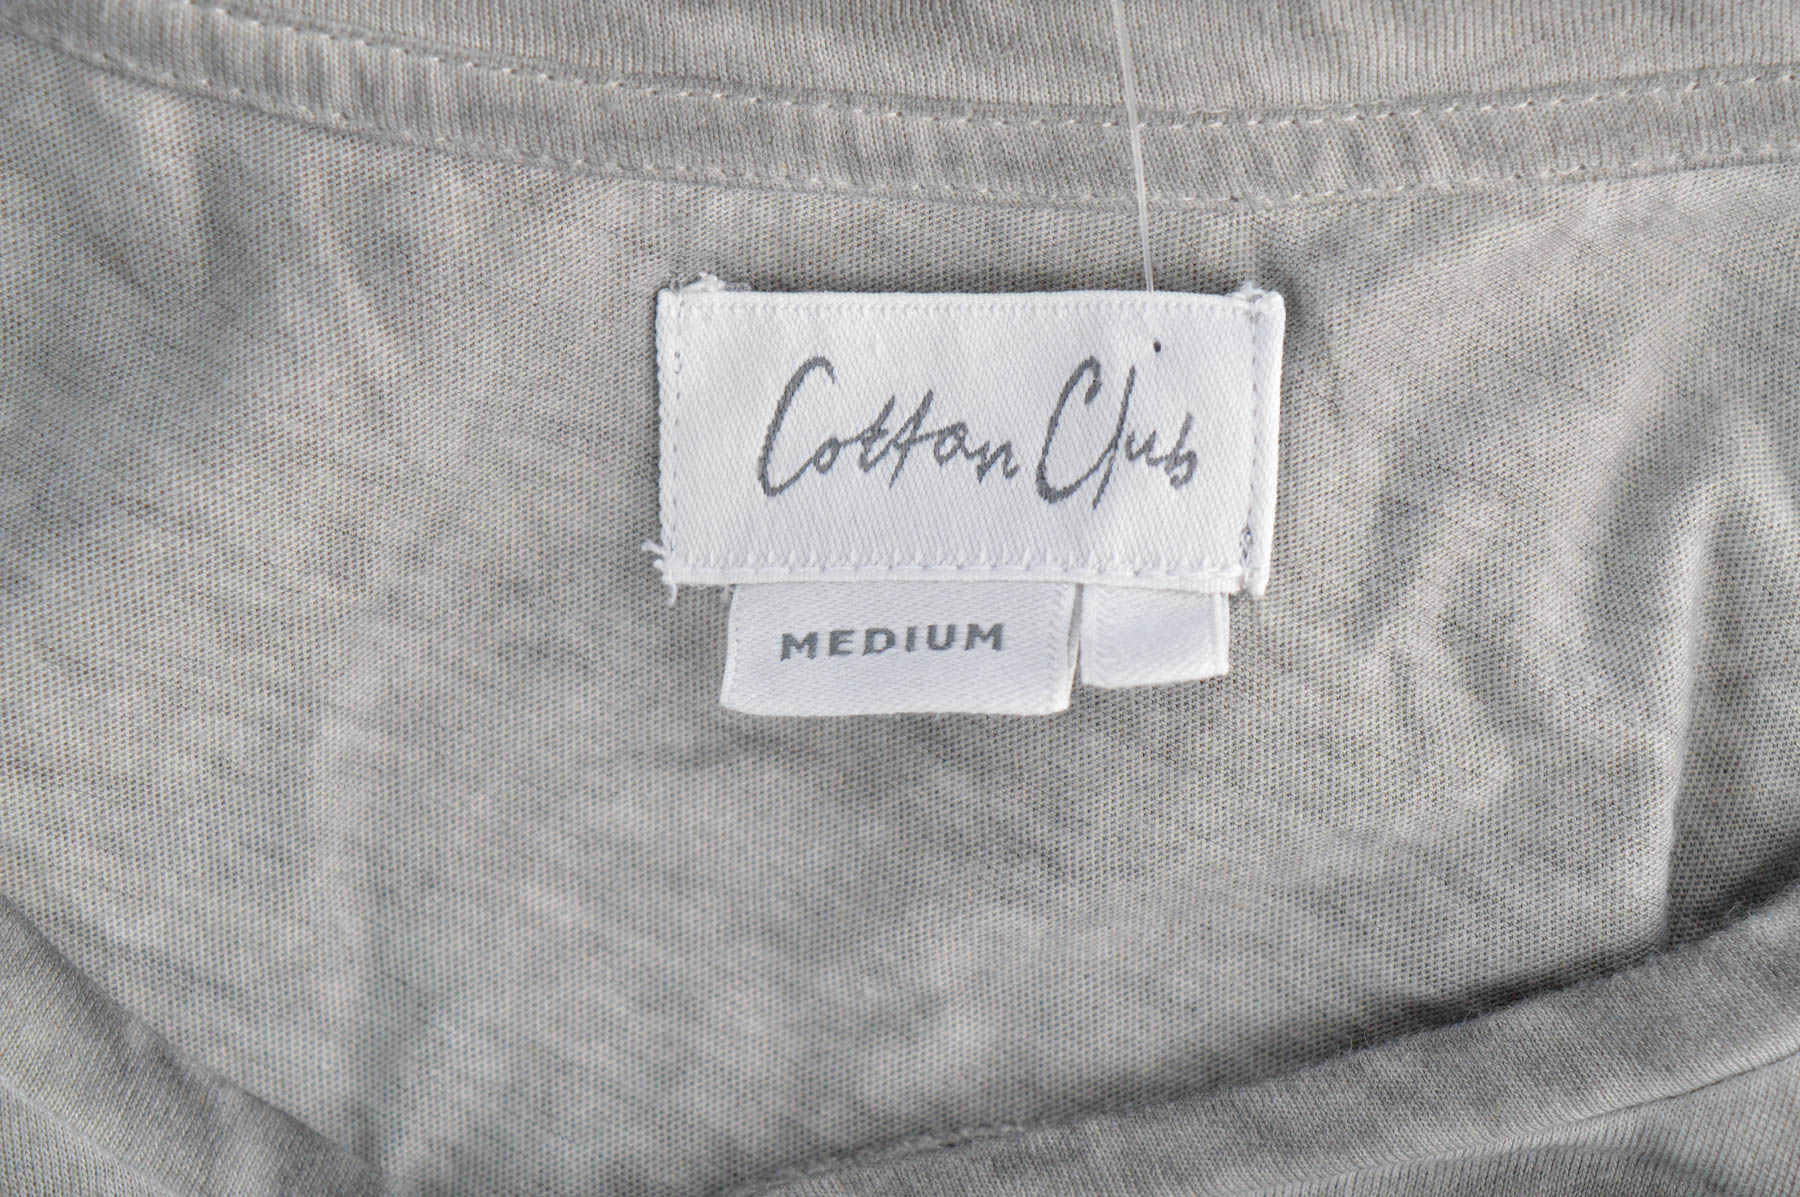 Women's t-shirt - Cotton Club - 2